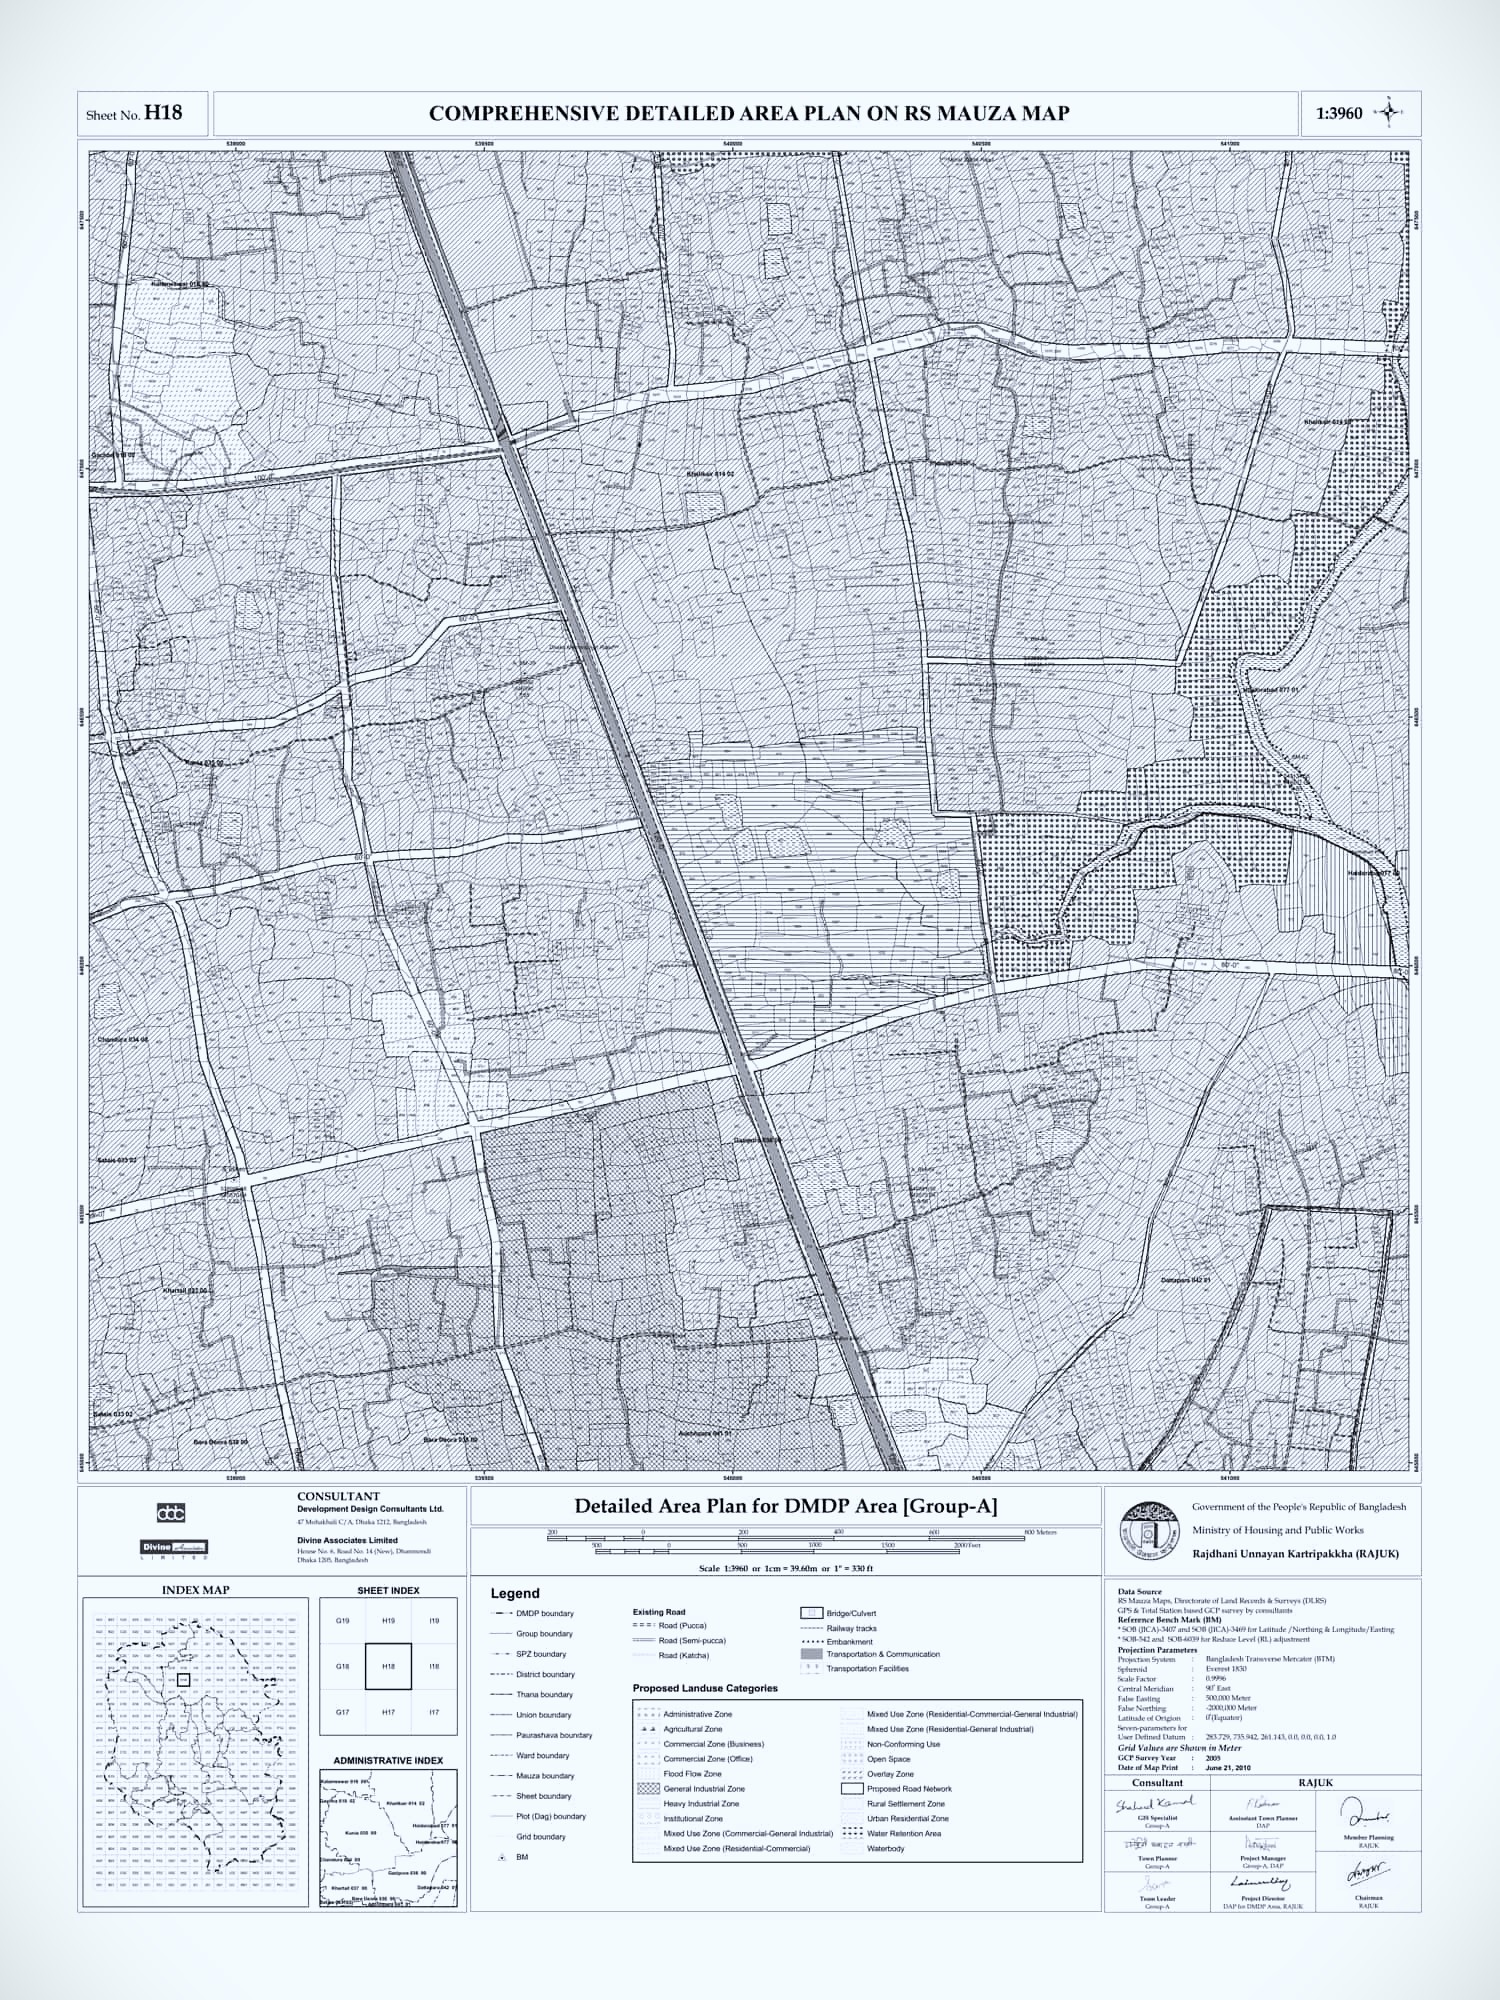 Detailed Area Plan (DAP) map of Dhaka city